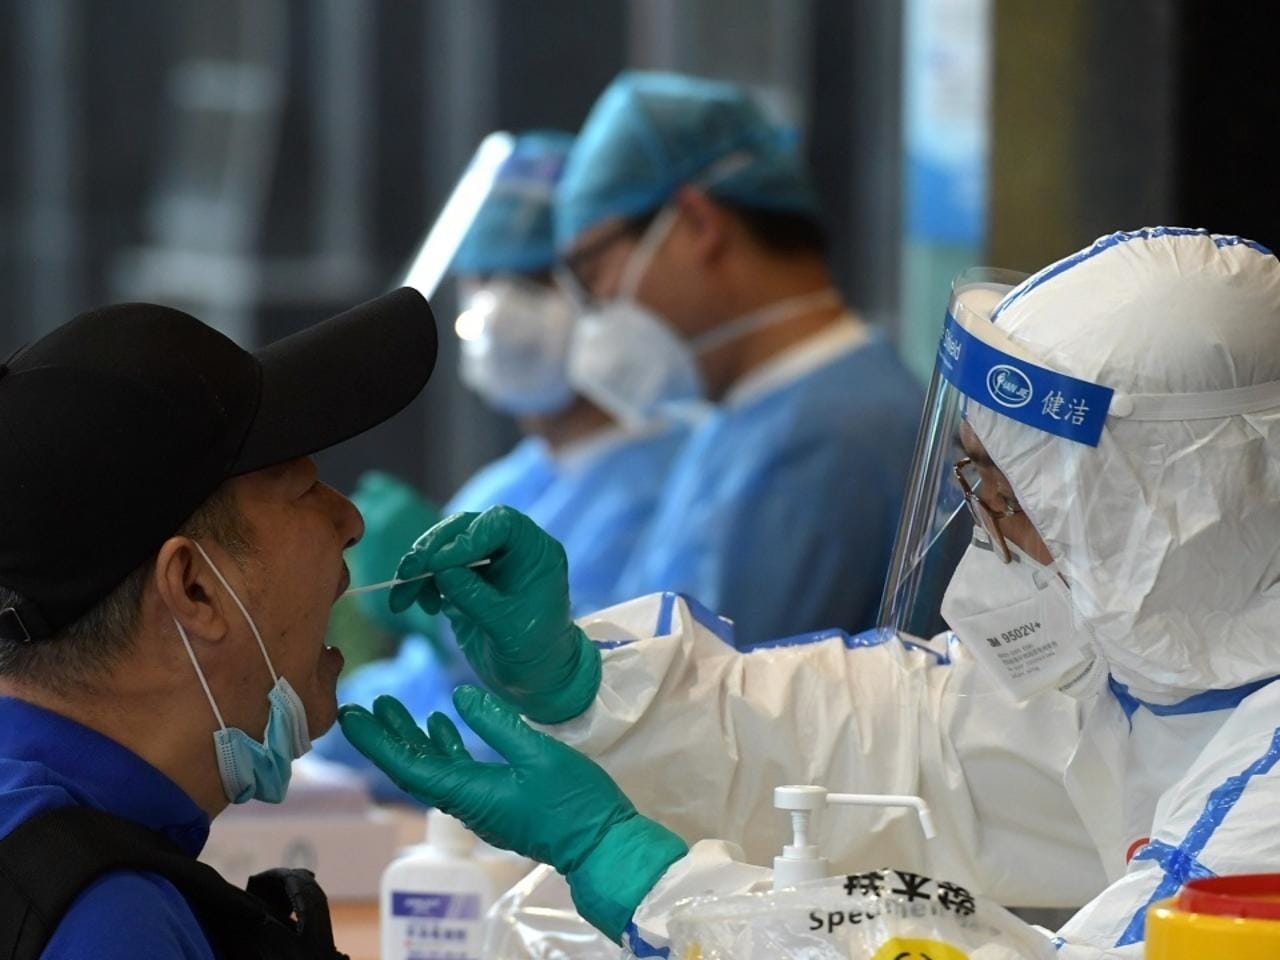 الصين تسجل 7 إصابات جديدة بفيروس كورونا